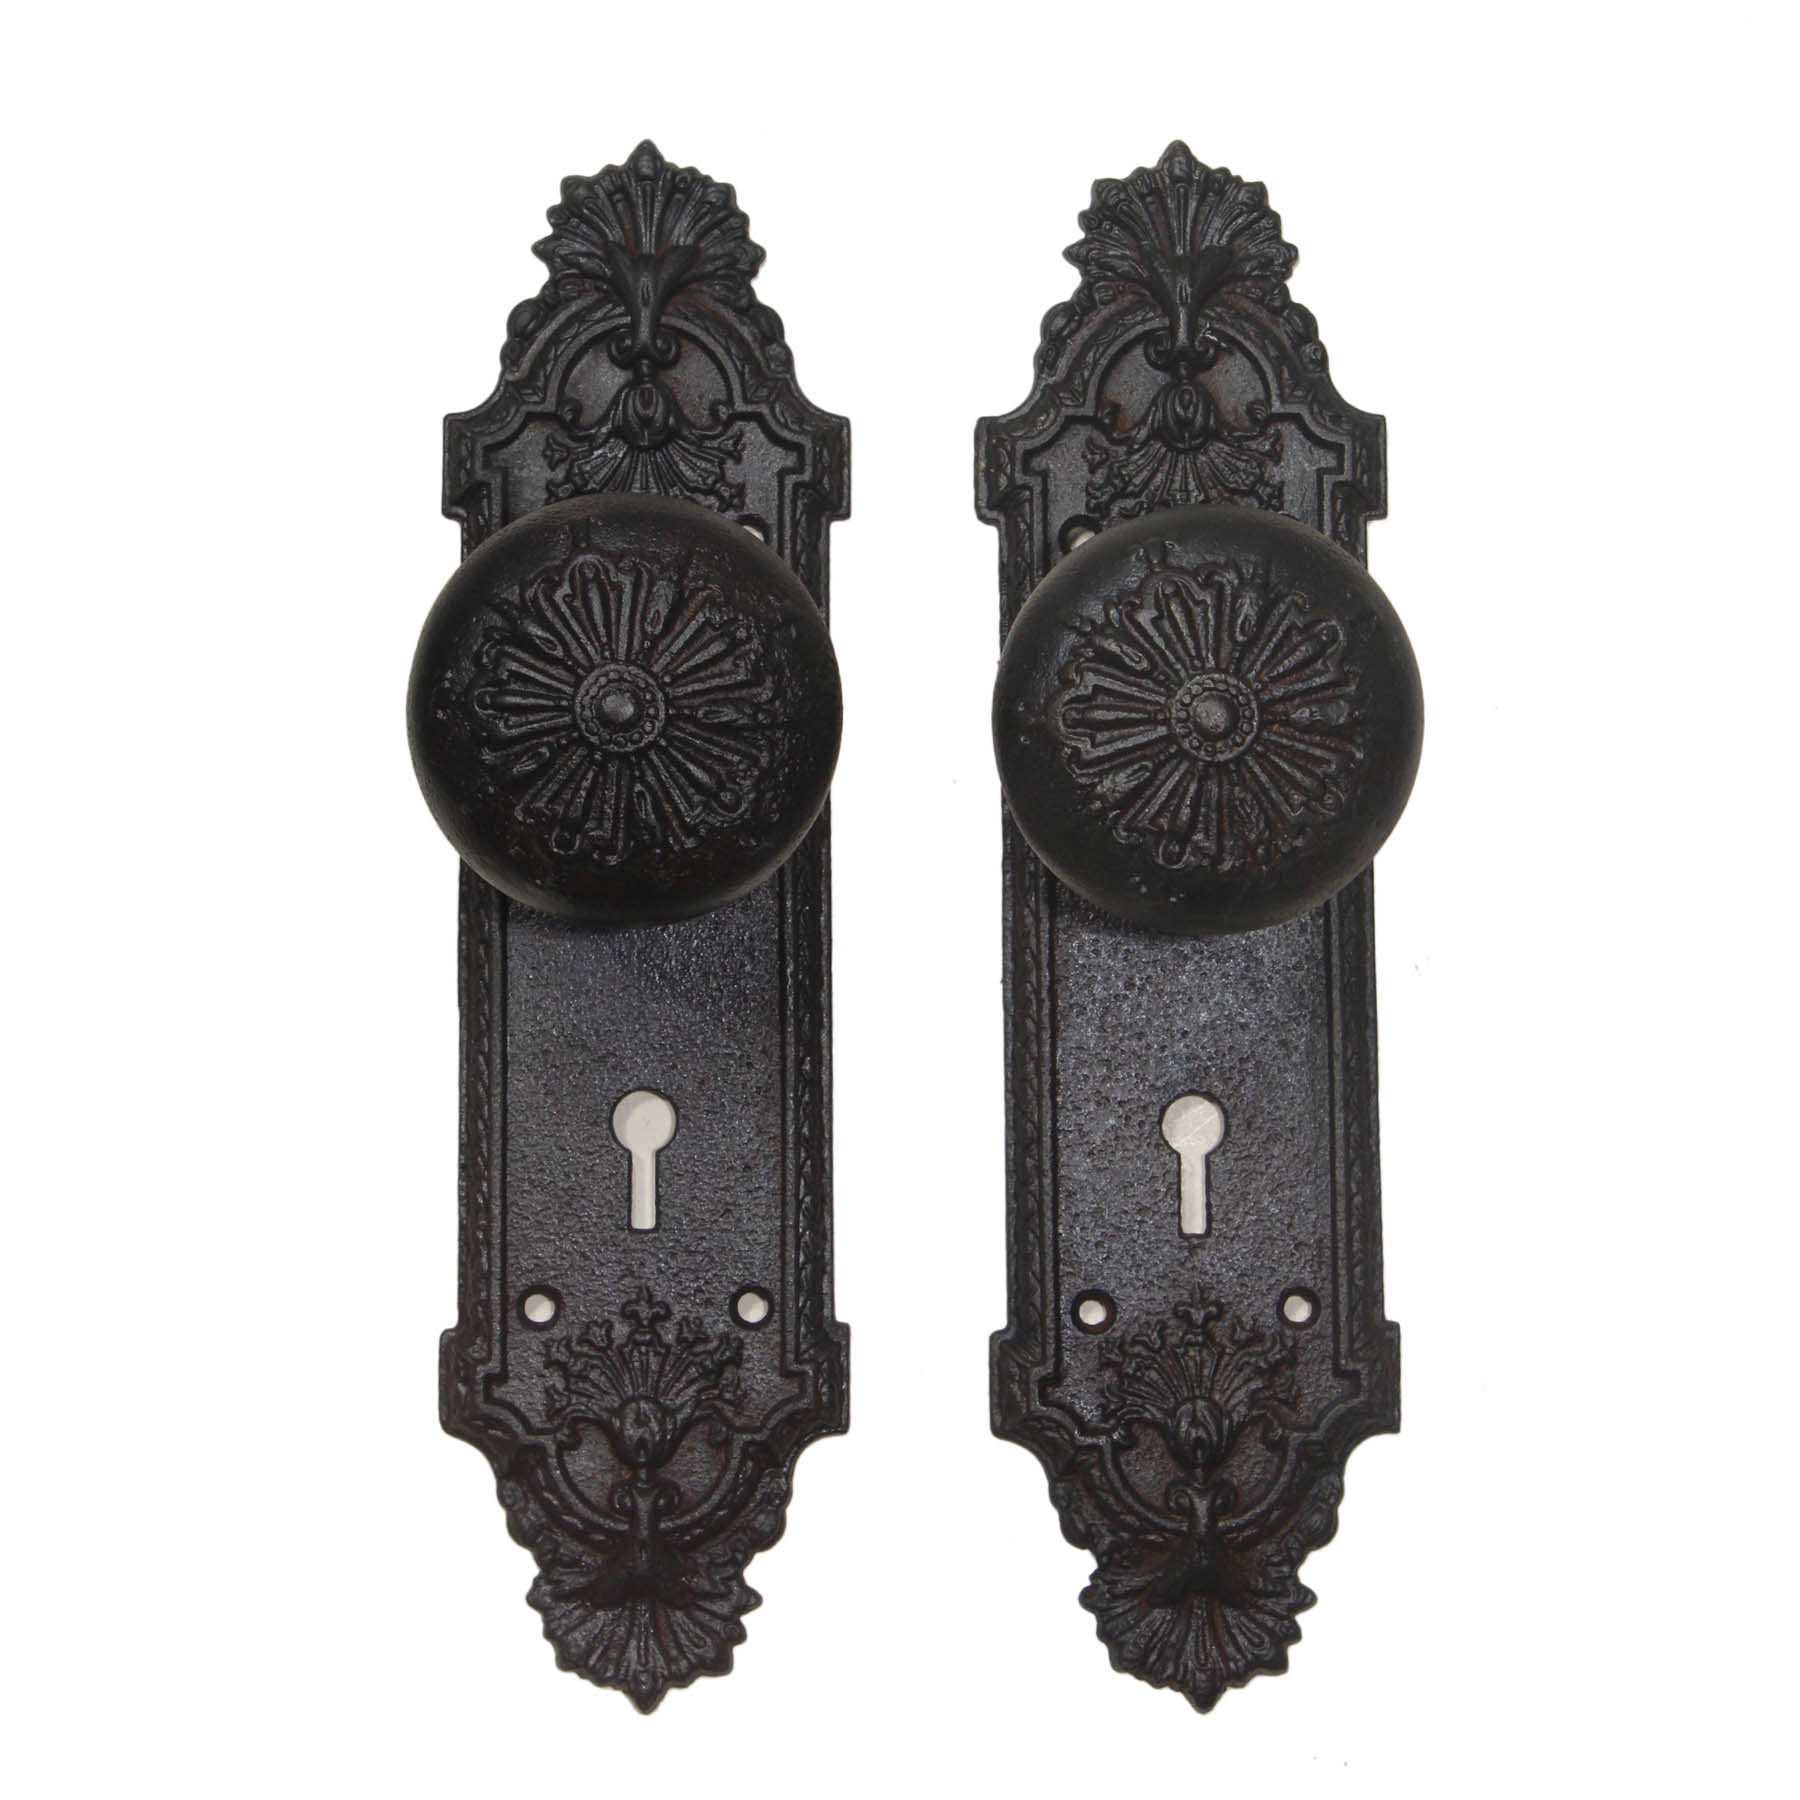 Antique Cast Iron Door Hardware Sets, “Ontario” By Barrows Lock Co.-67813